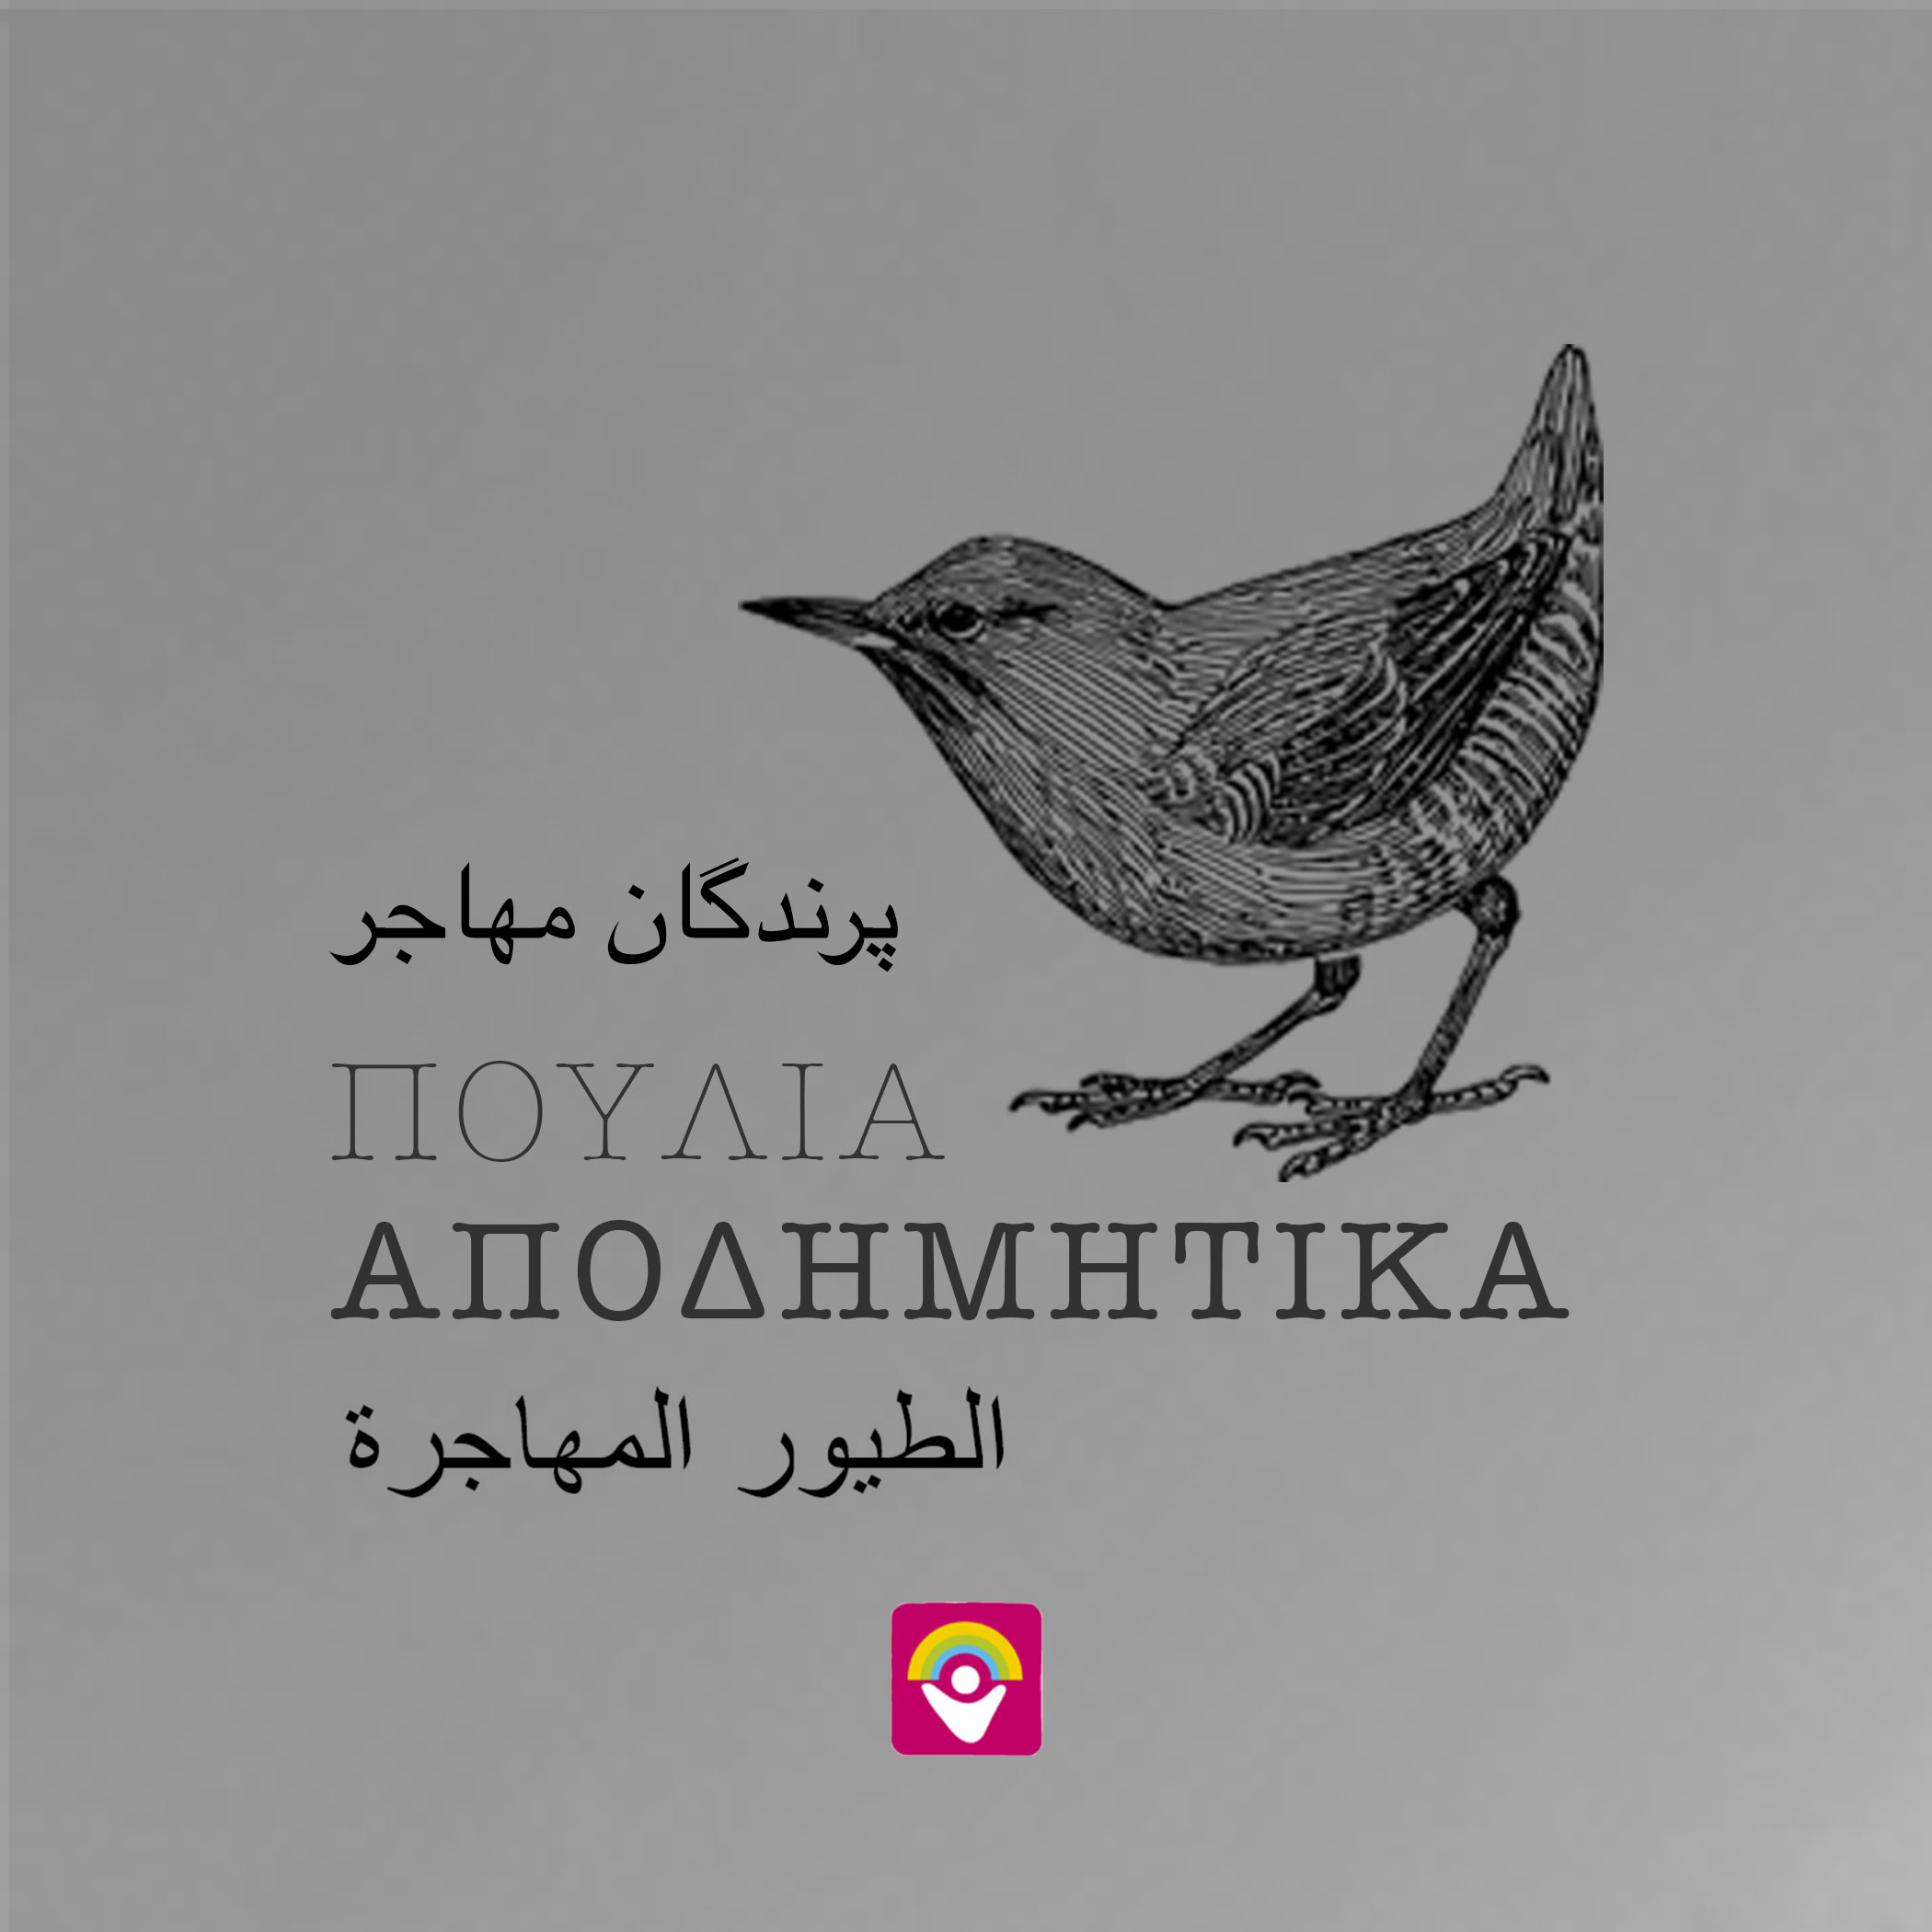 Το 10ο φύλλο της εφημερίδας «Αποδημητικά Πουλιά» στην αγγλική γλώσσα